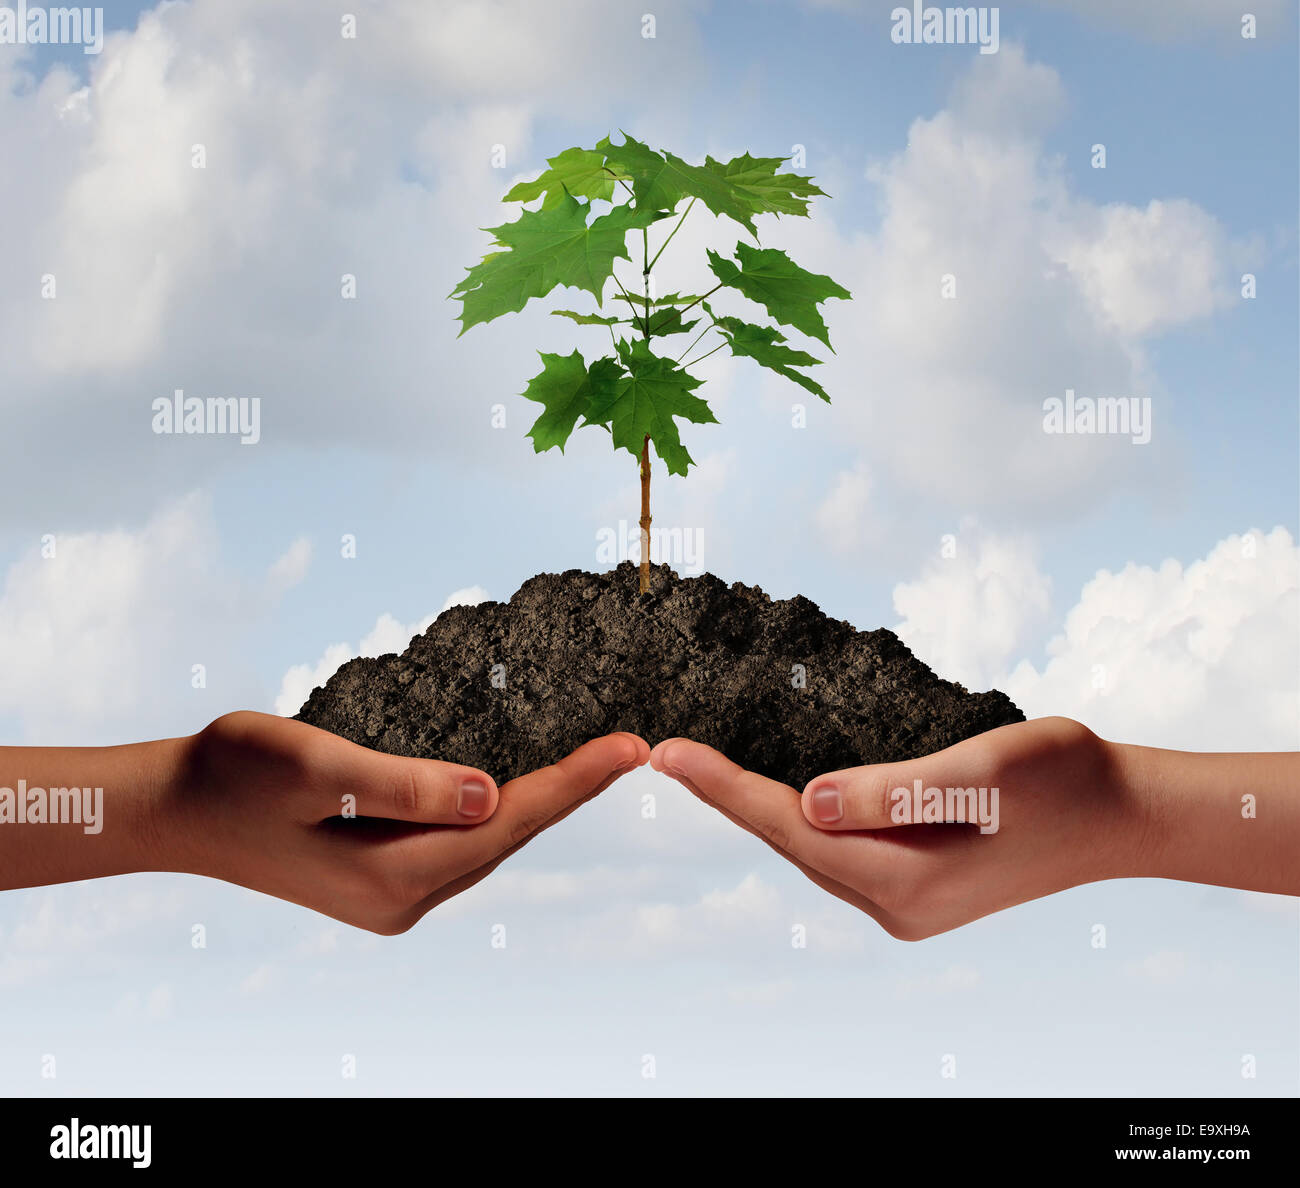 Zusammenarbeit Wachstum Geschäft Symbol als zwei Hände halten ein Haufen Erde mit einem Baum Bäumchen wächst. Stockfoto